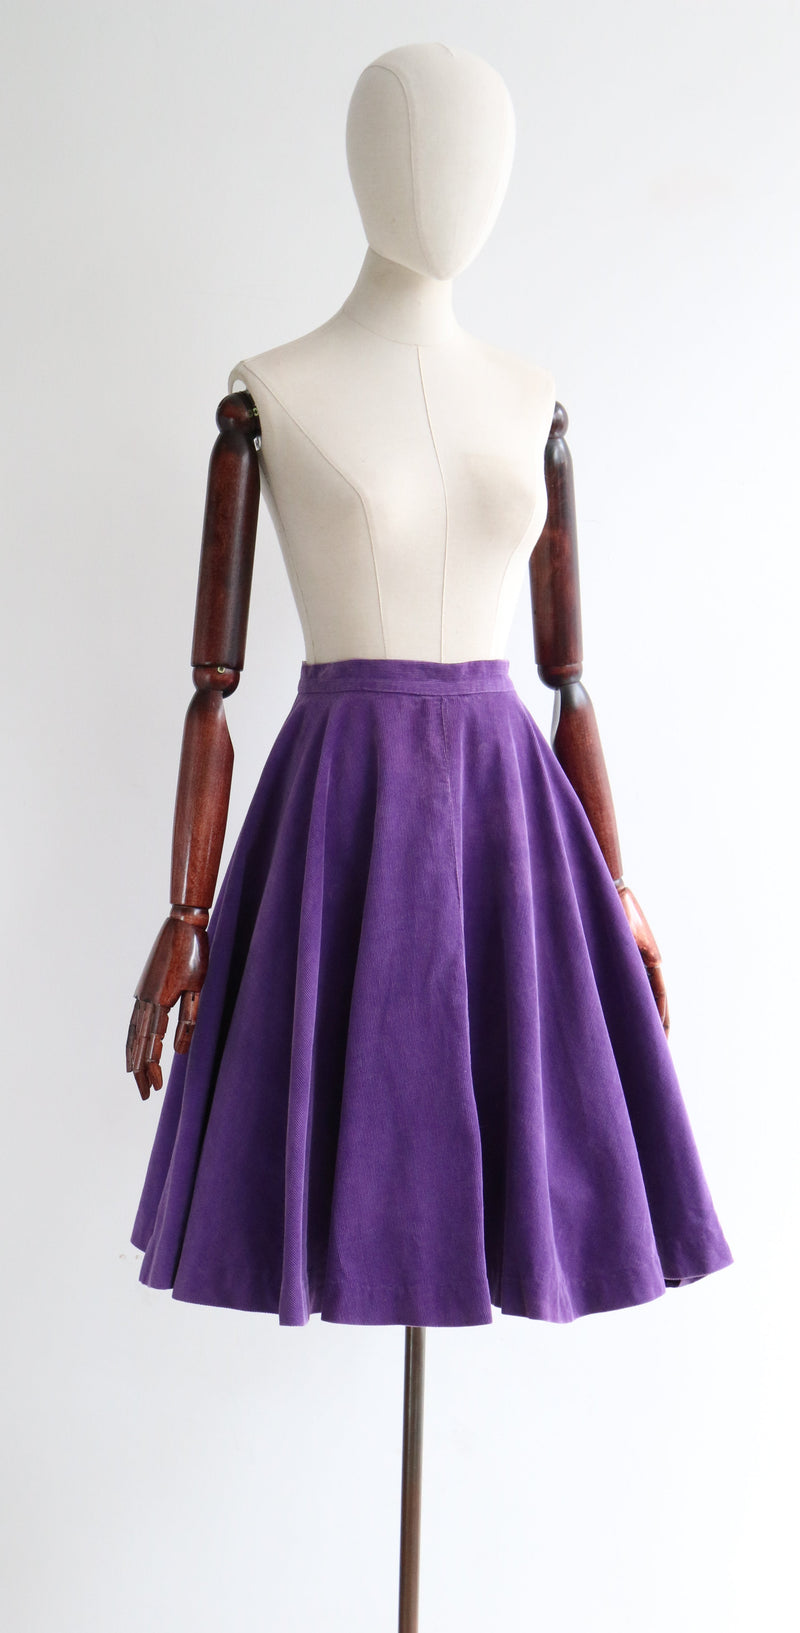 "Purple Corduroy" Vintage 1950's Purple Corduroy Full Circle Skirt UK 10 US 6